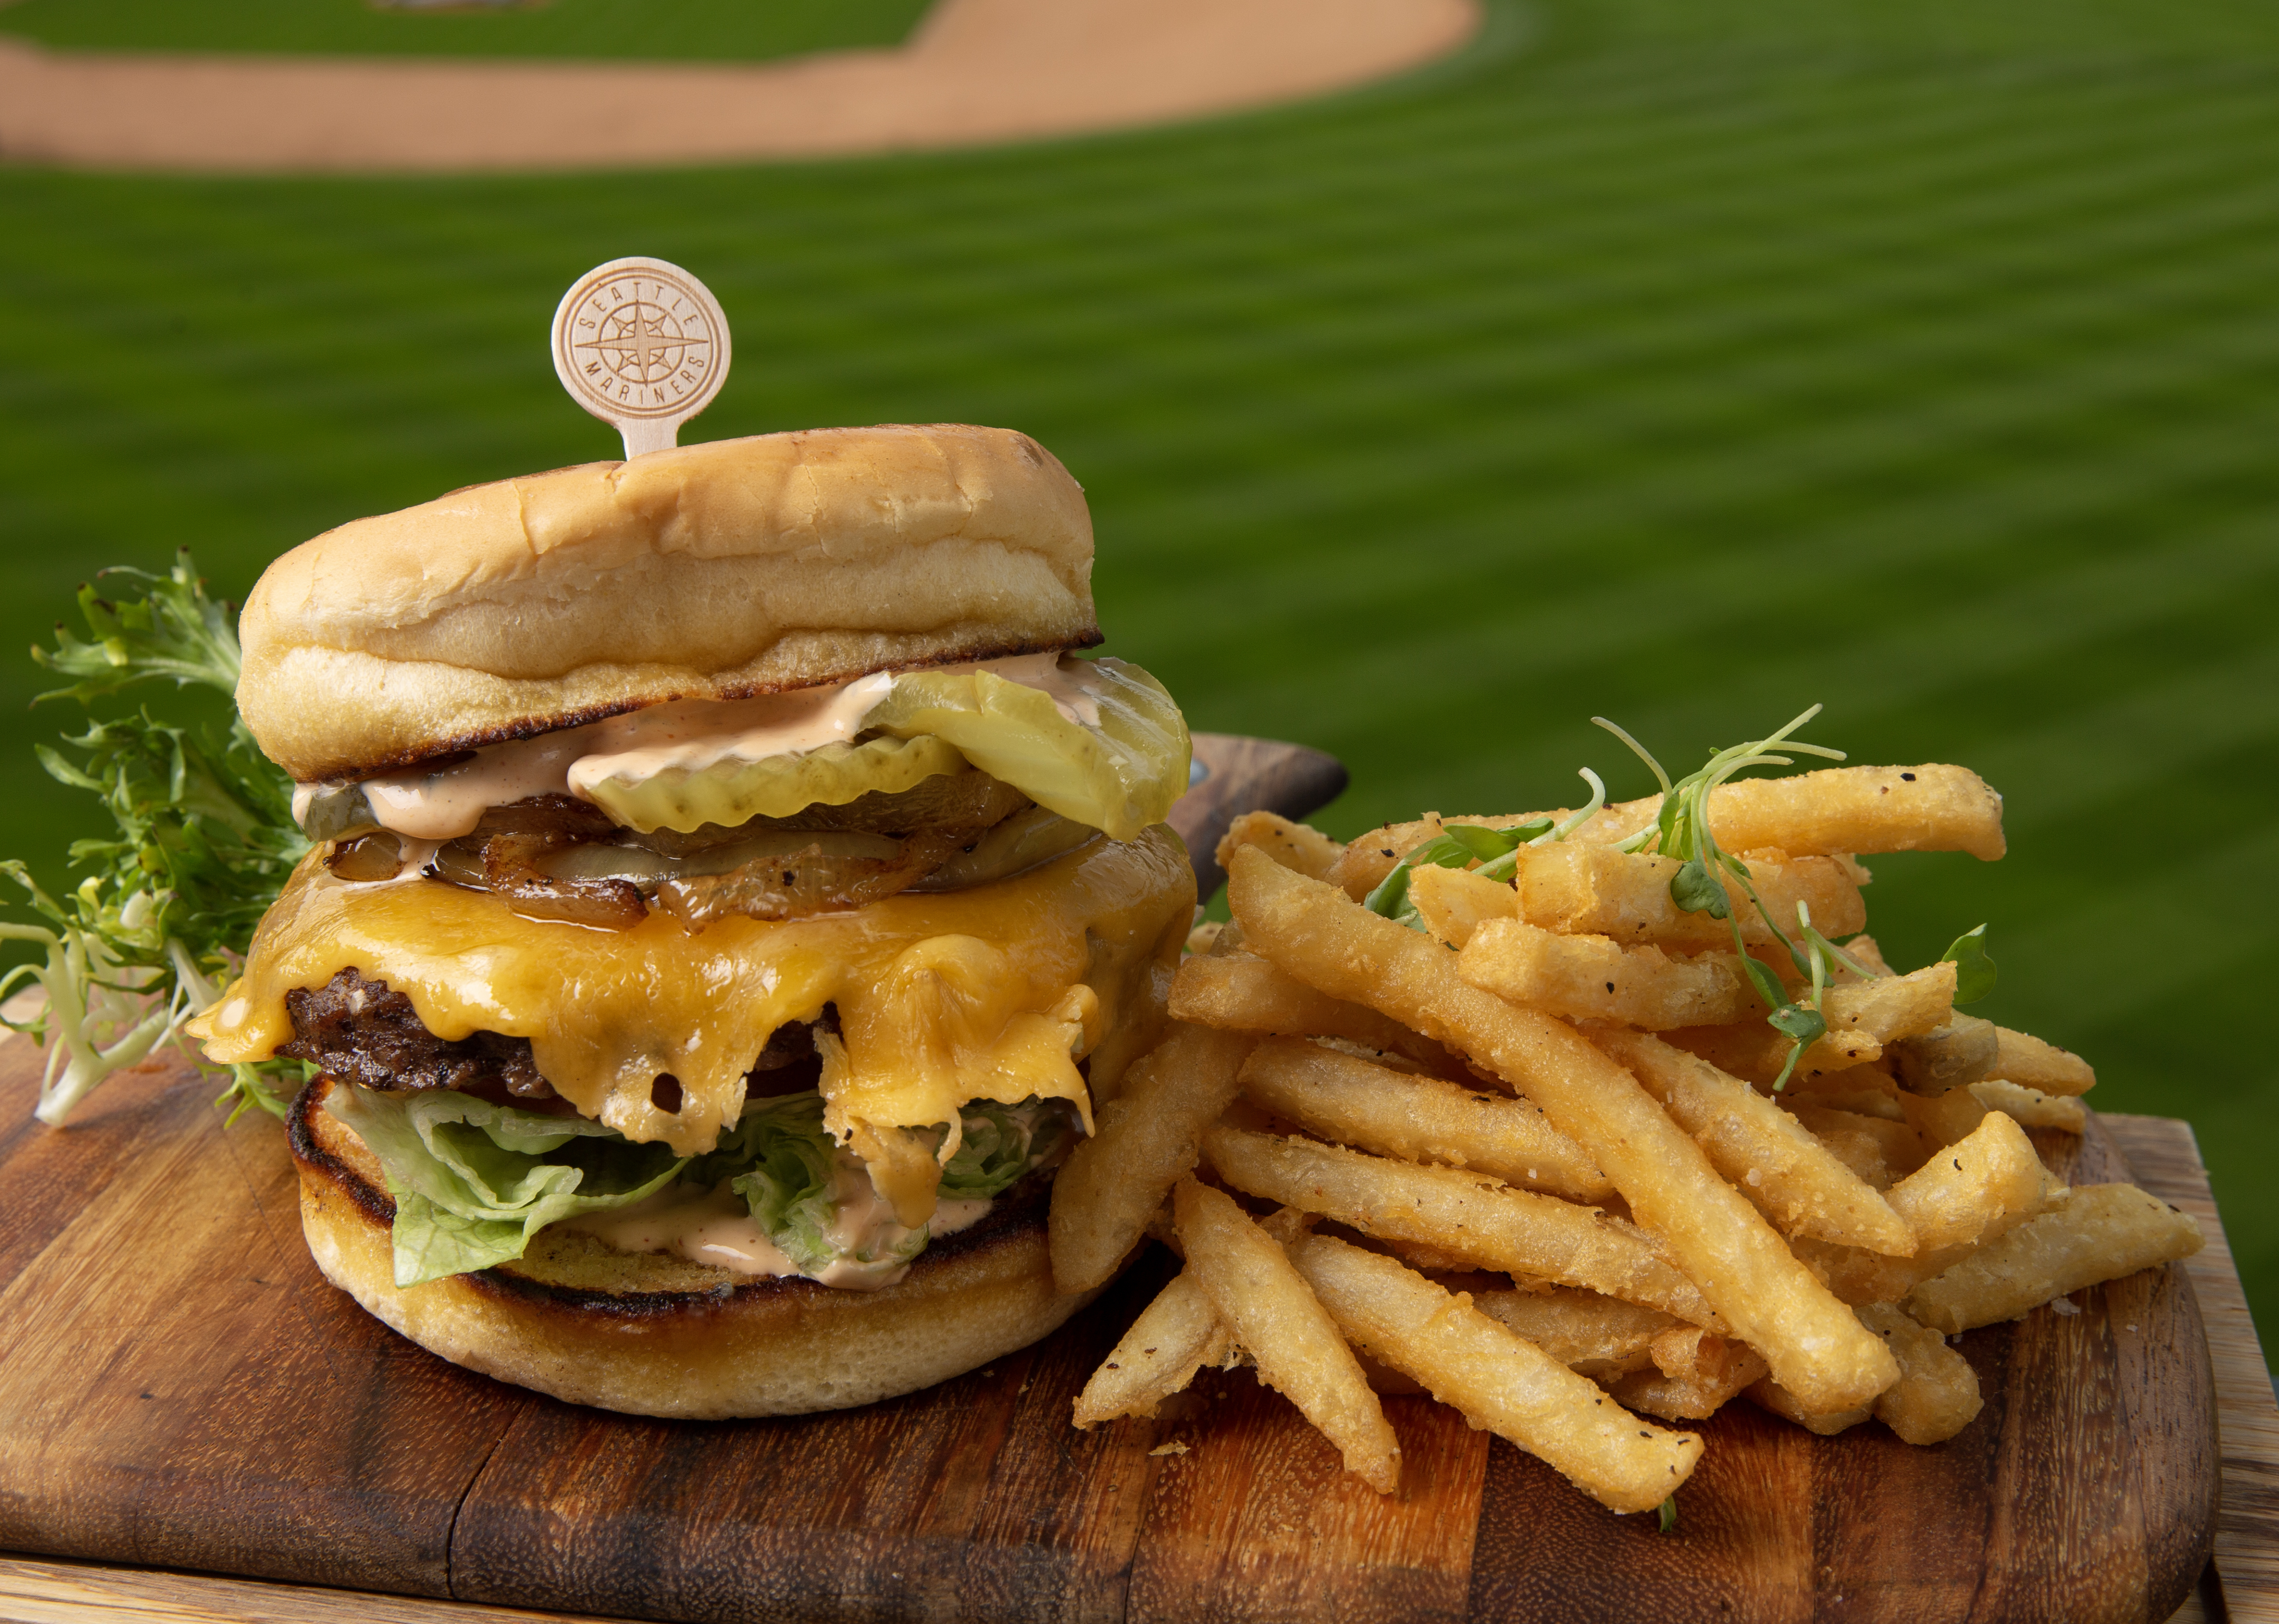 tall burger and fries at baseball stadium